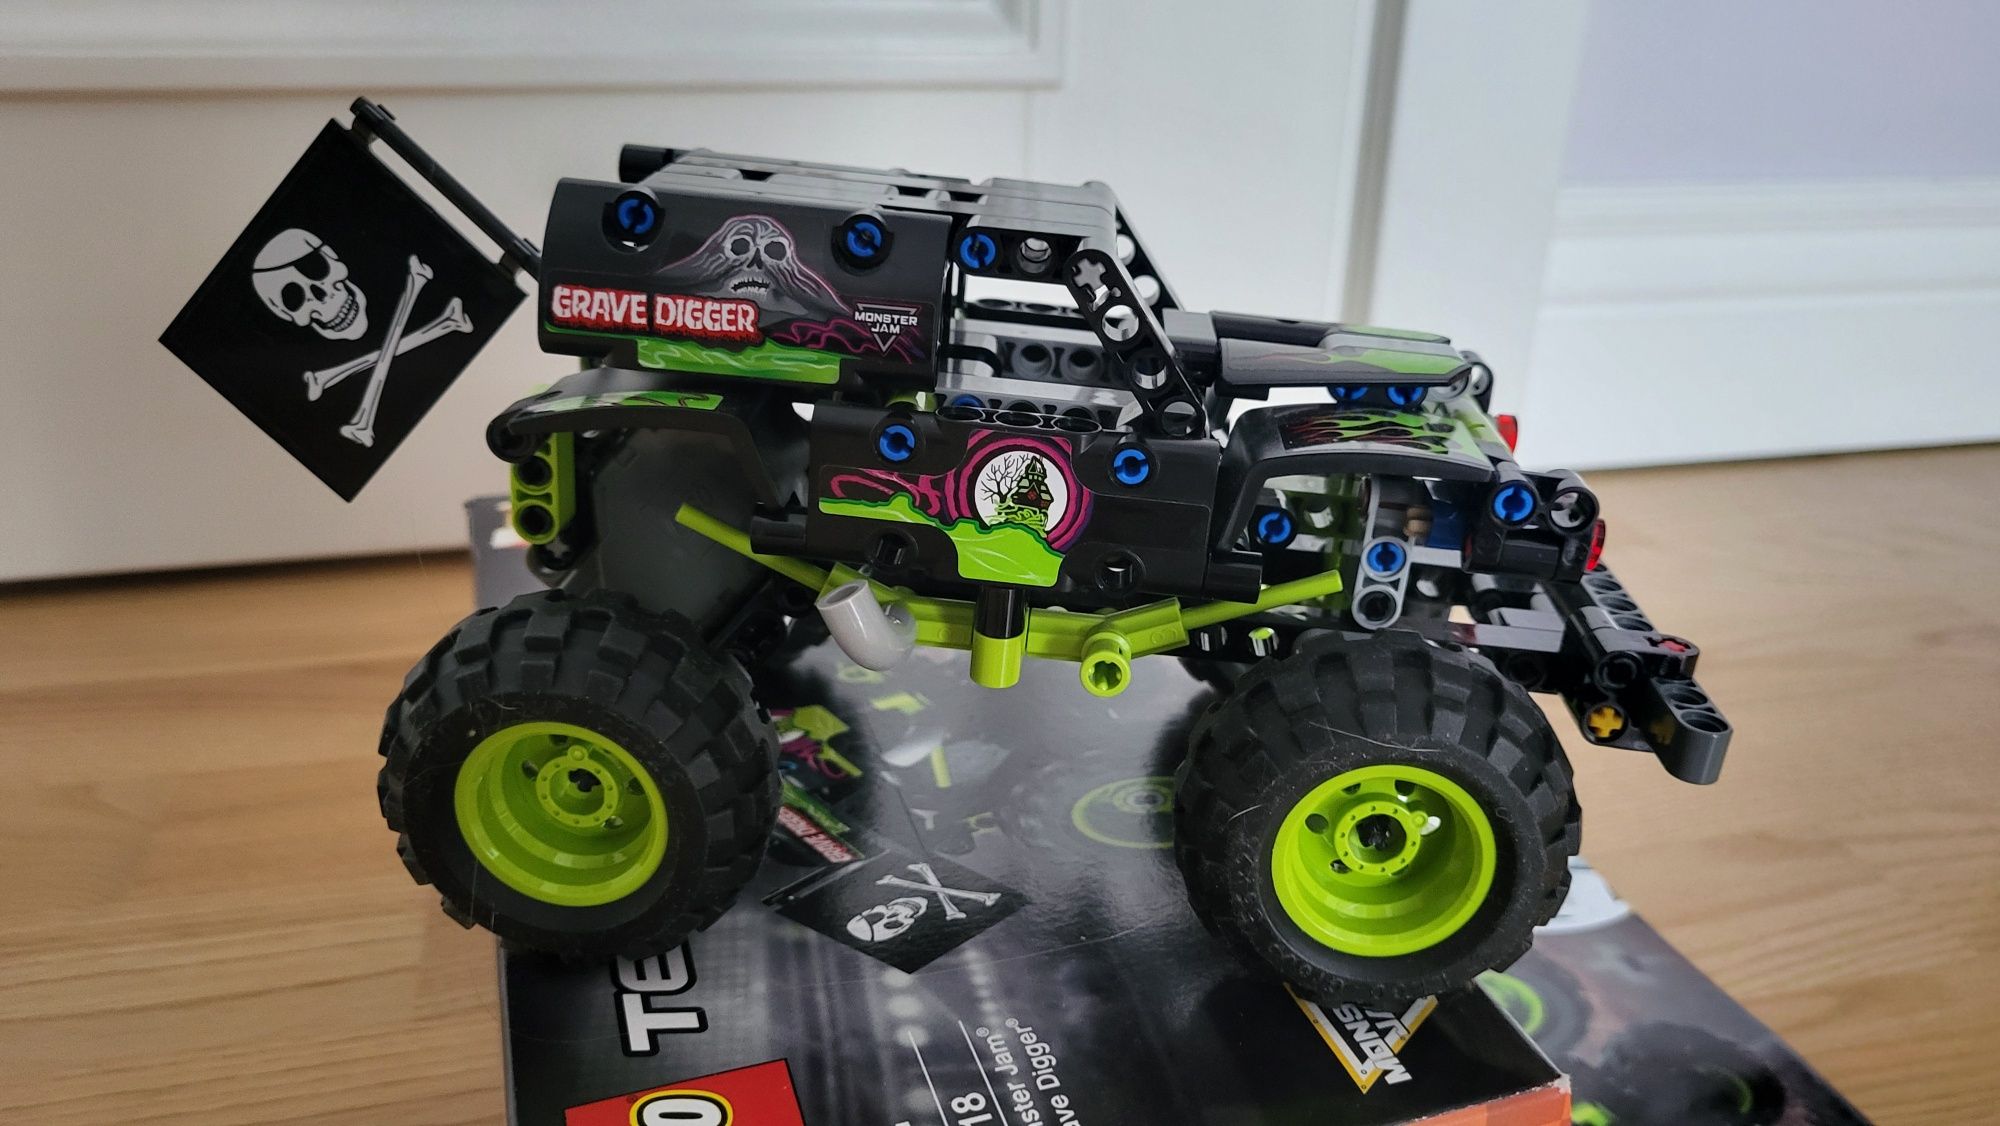 LEGO Technic Monster Jam Grave Digger 42118